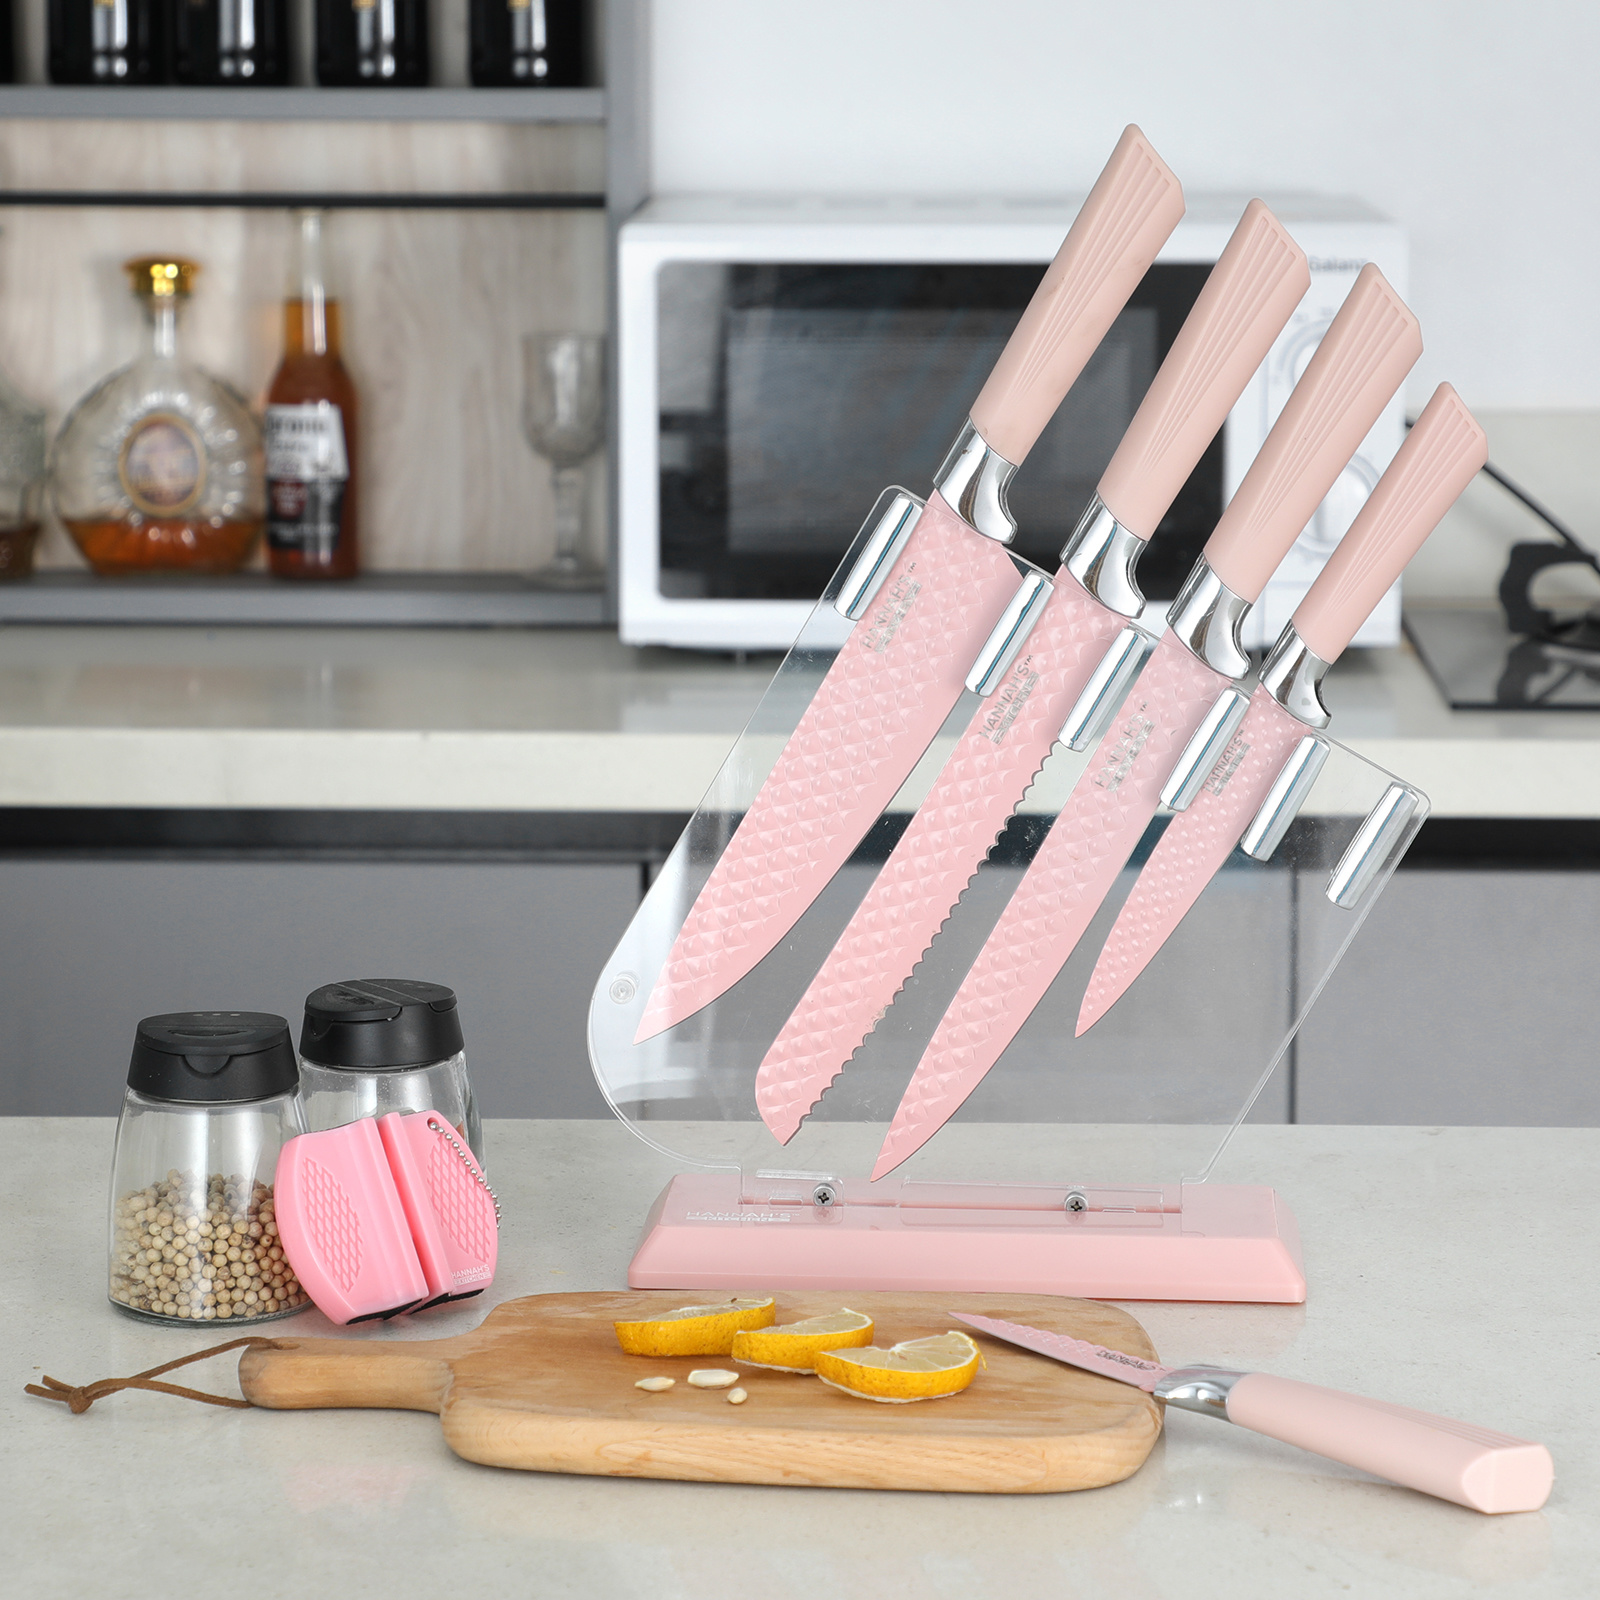 https://cdn.shoplightspeed.com/shops/618302/files/47999186/cute-pink-kitchen-knife-block-set-delivery-in-los.jpg